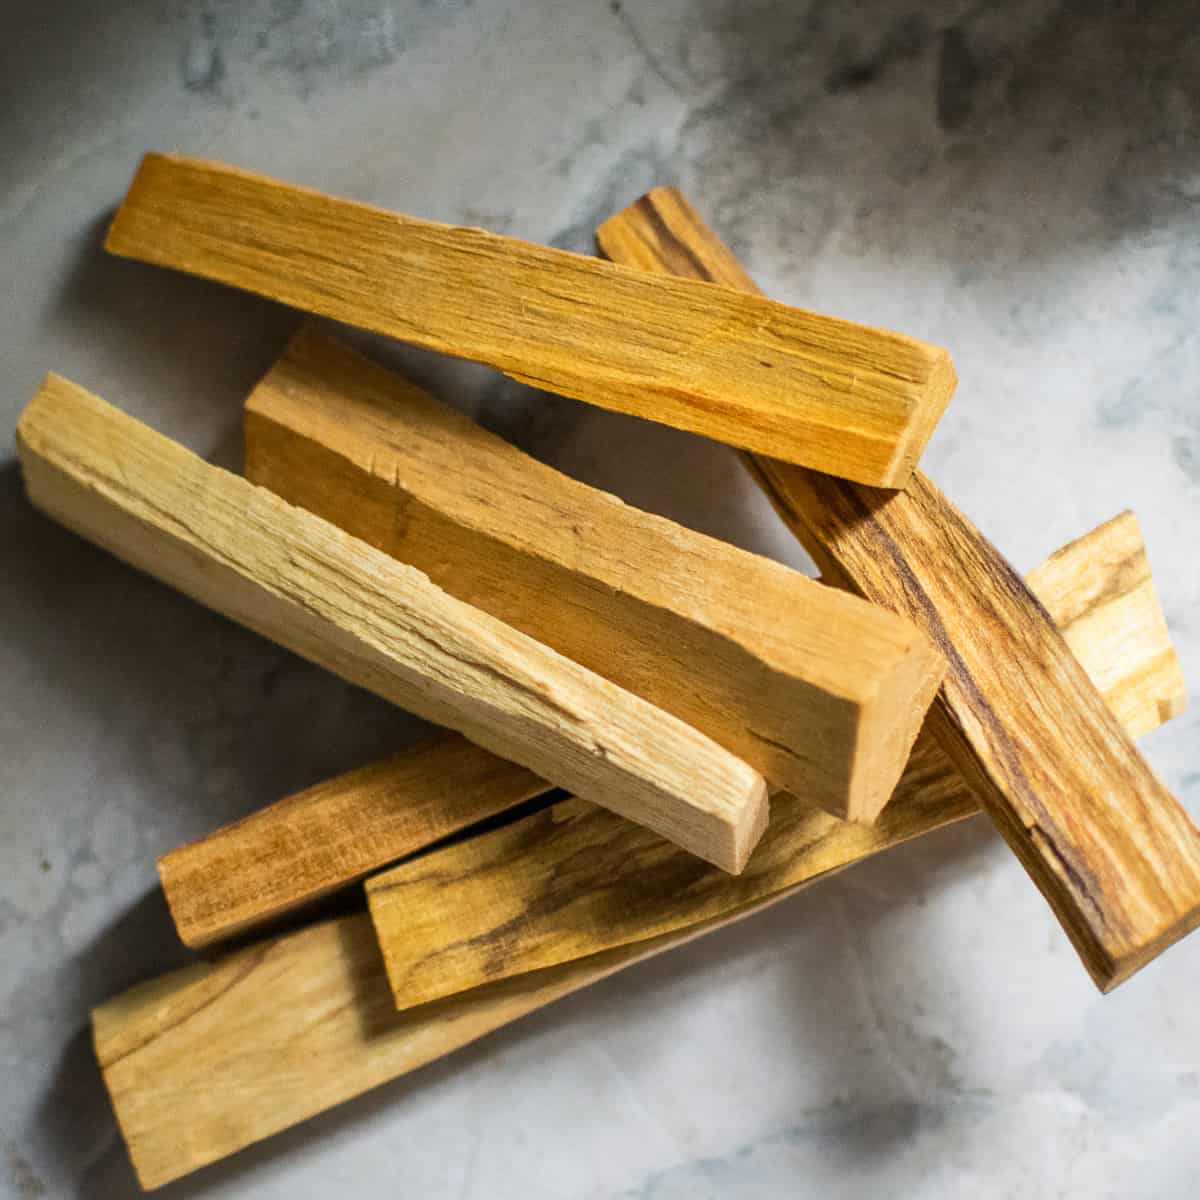 A pile of palo santo wood sticks.